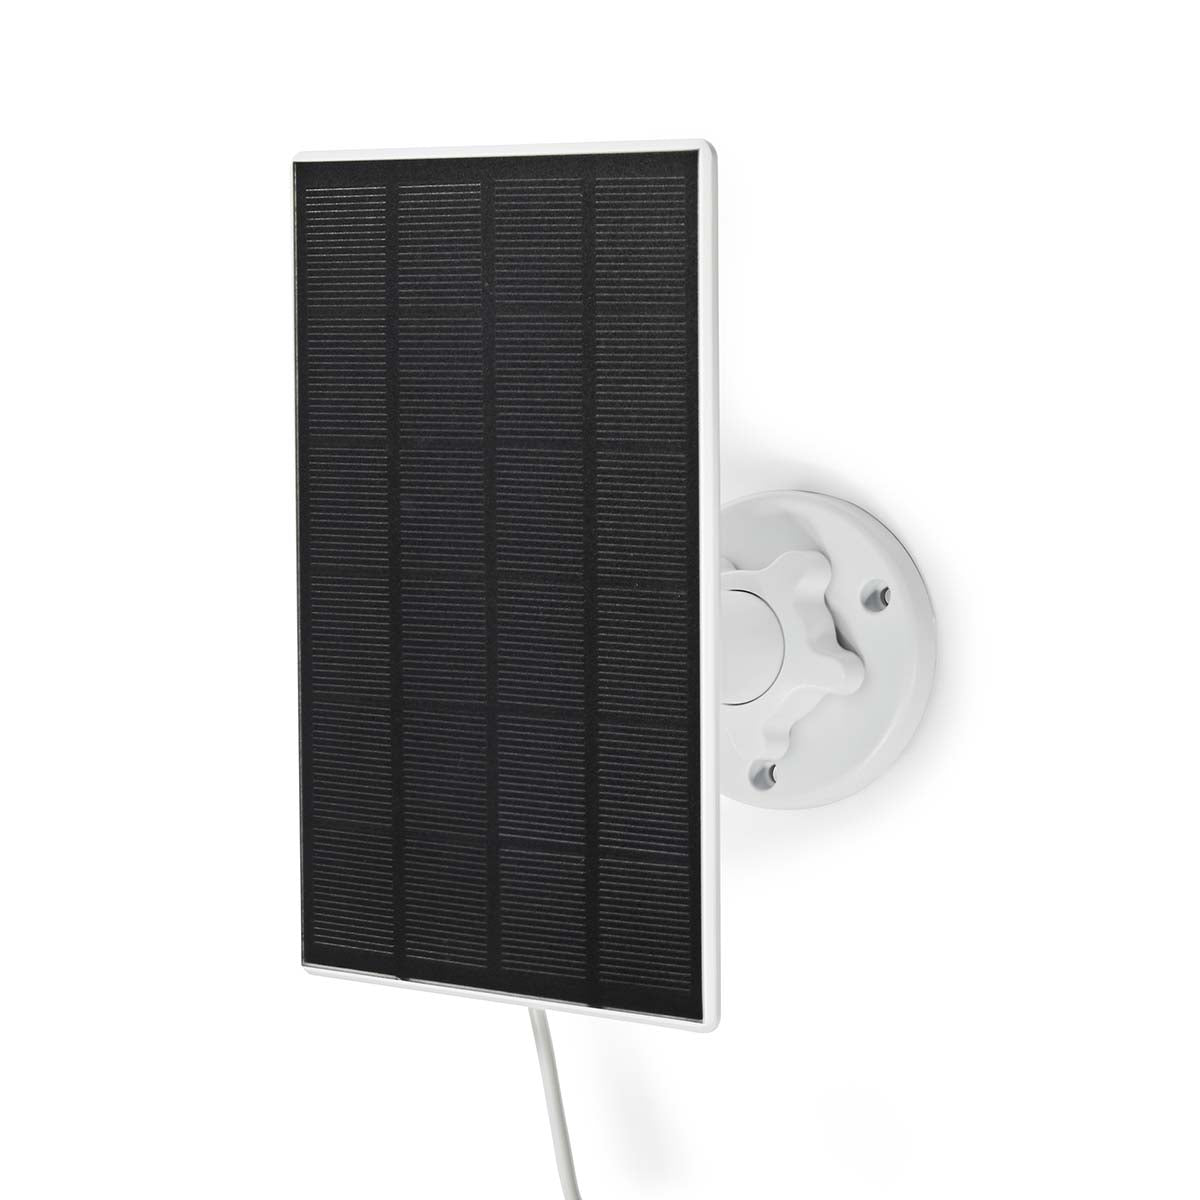 Solarpanel mit Micro-USB wurde zum Aufladen der Außenkamera WIFICBO30WT entwickelt